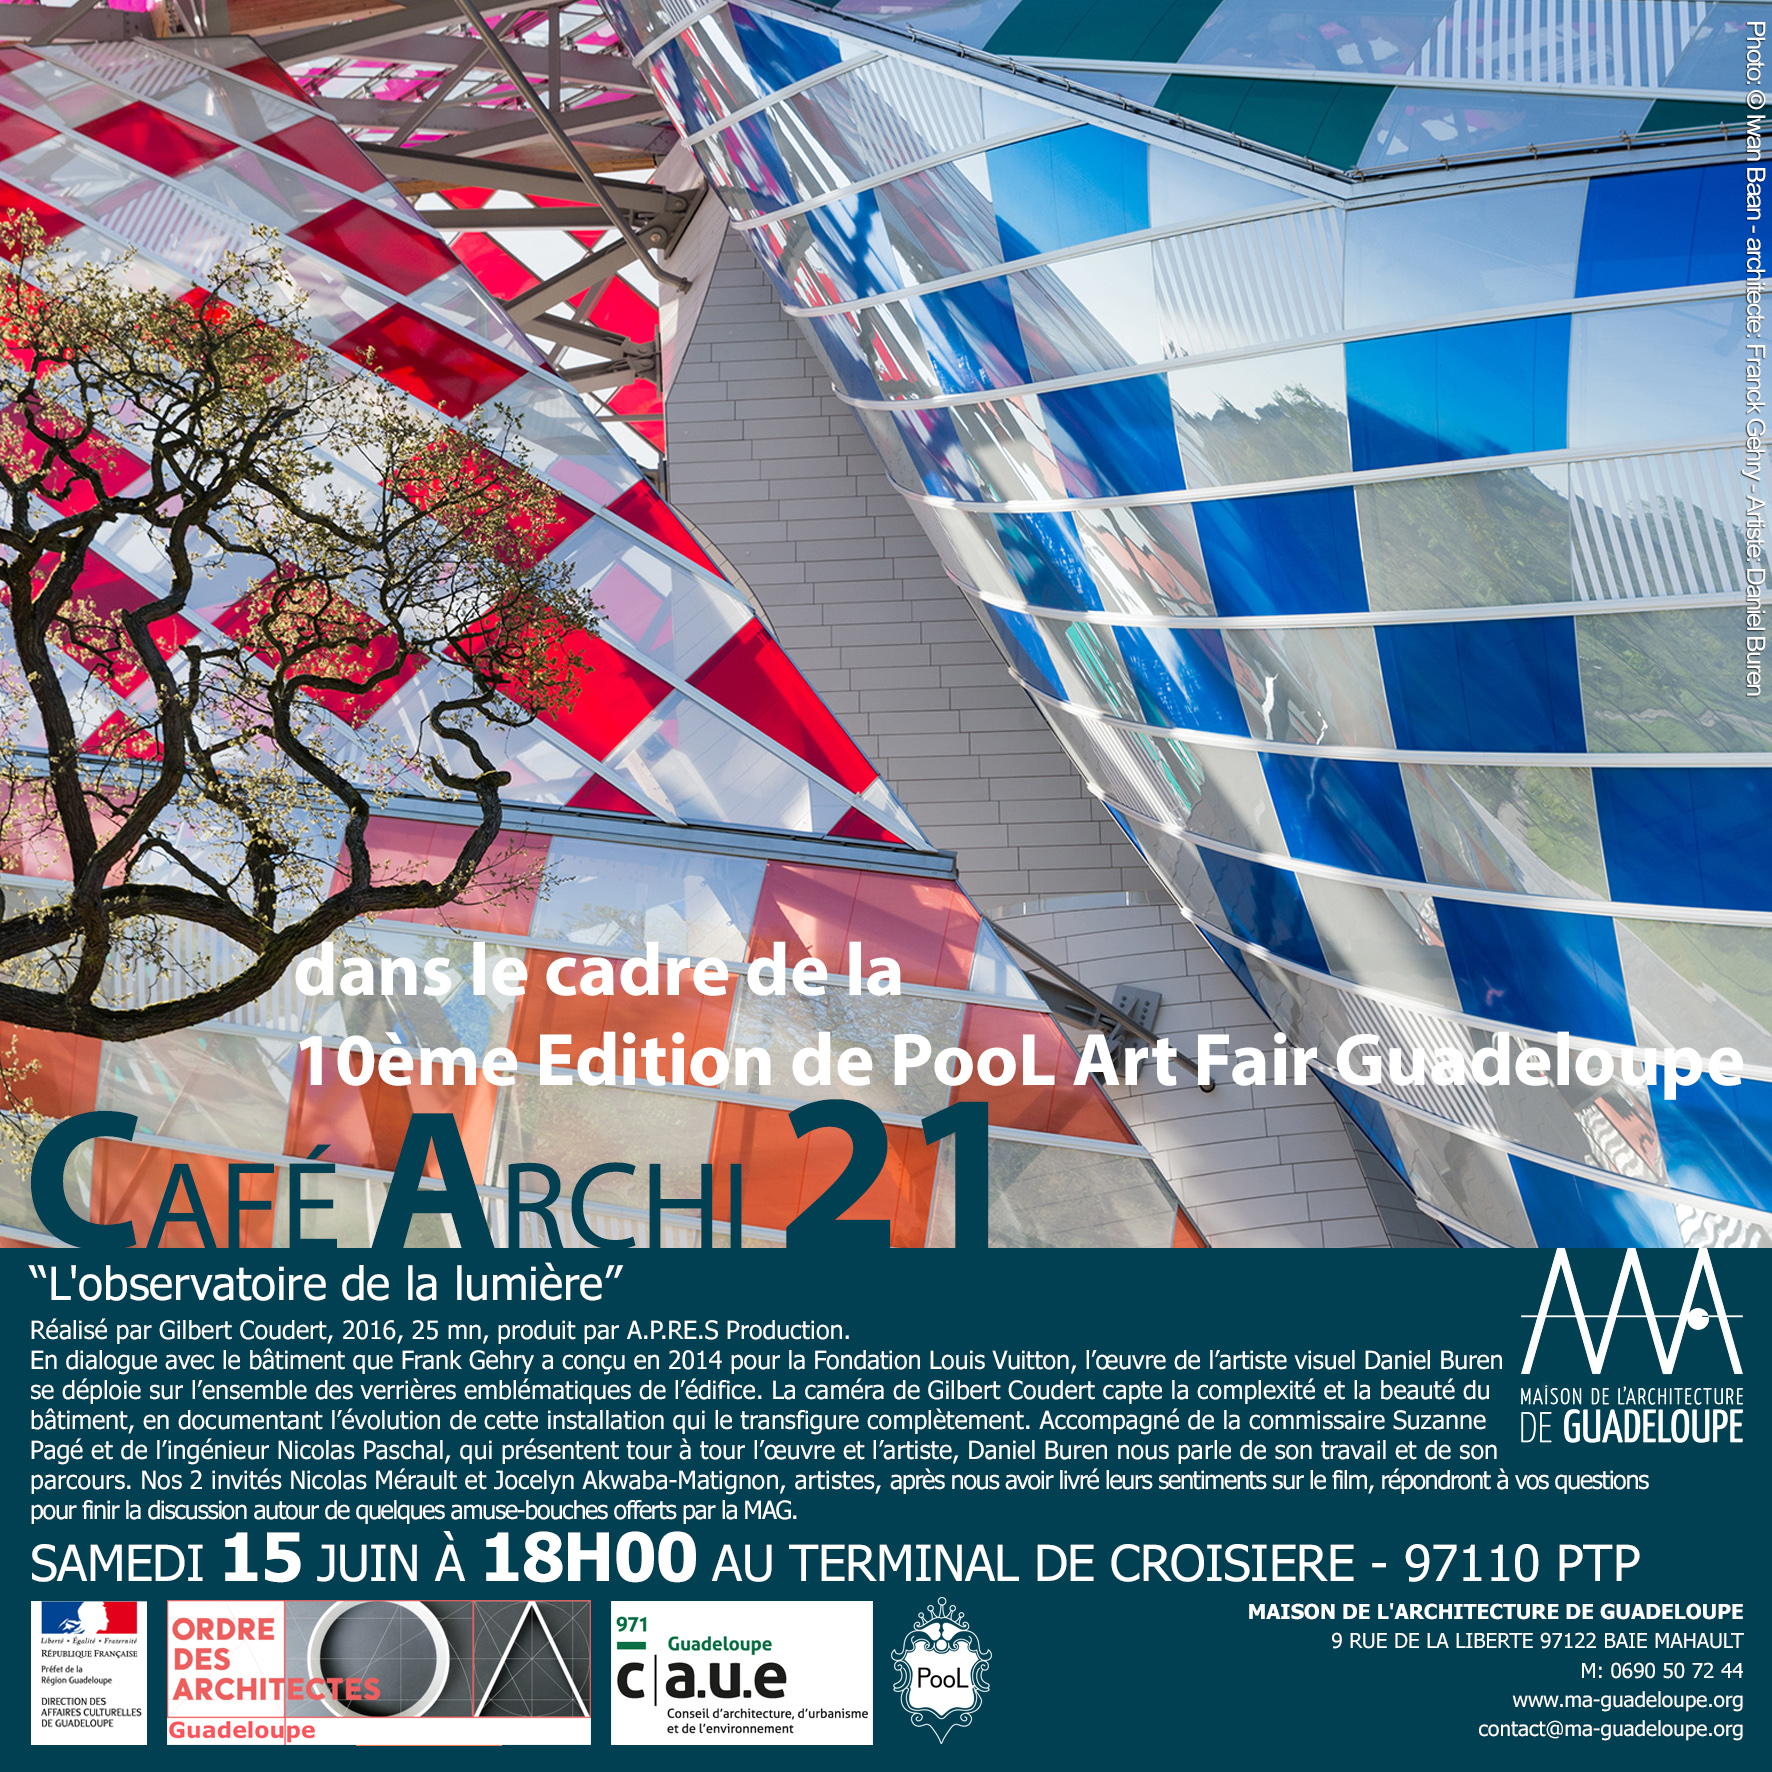 You are currently viewing Retour en image : Café Archi21 @ Pool Art Fair 2019